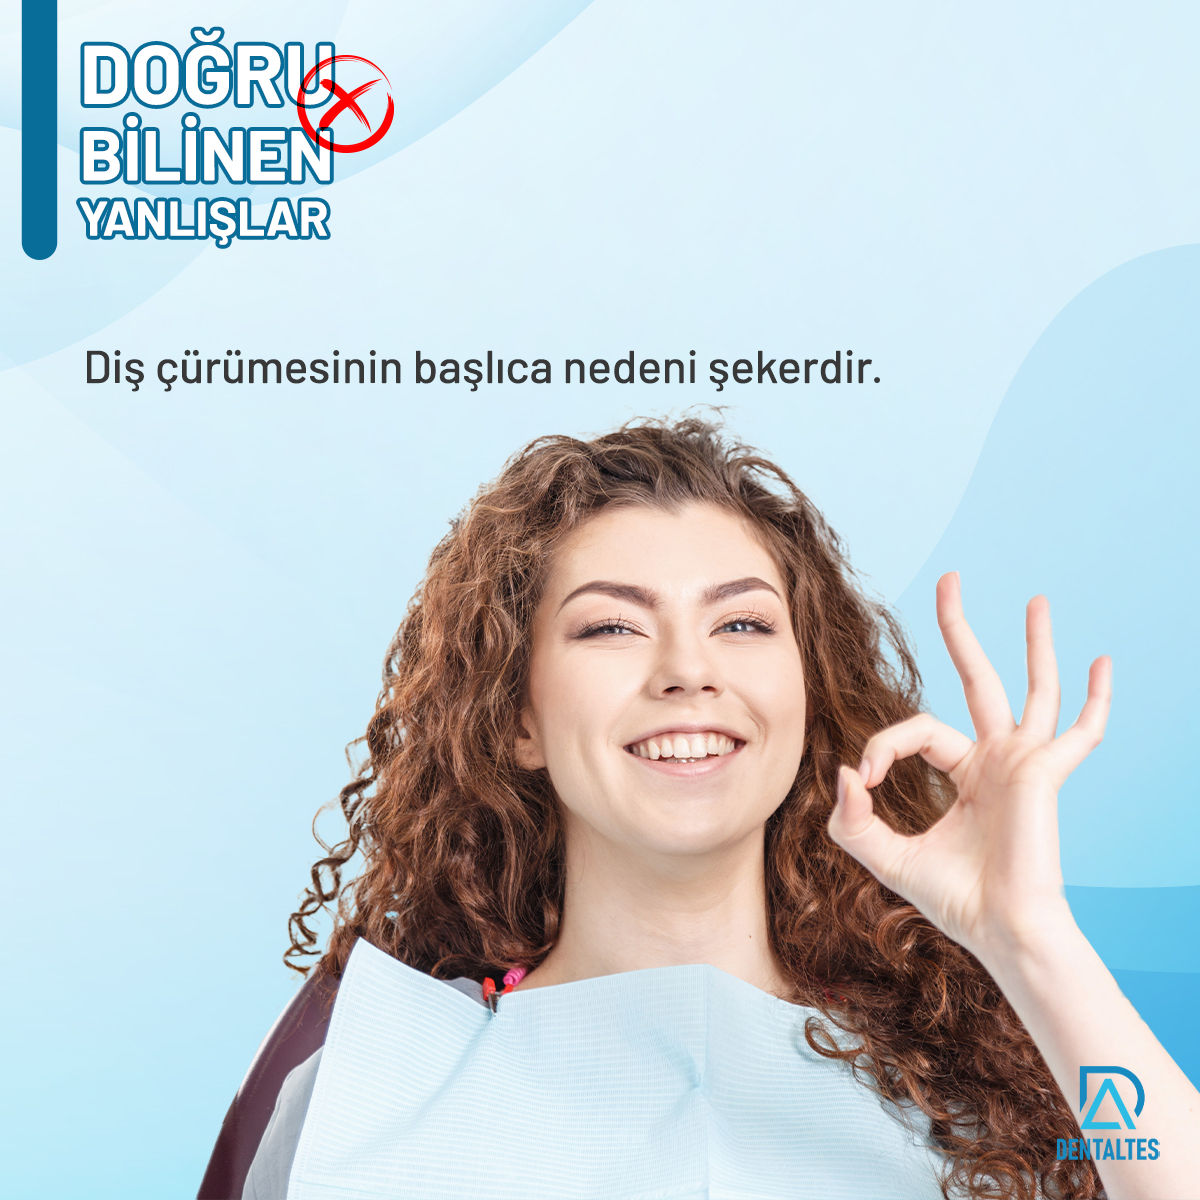 Şeker bu konuda kesinlikle büyük bir rol oynar ancak tek sebep değildir. Ağzımızda biriken zararlı bakteri ve plaklar diş çürümesine sebep olur. Detaylı bilgi ve randevu için : 0216 784 4394 #DentAltes #dişhekimi #dişkliniği #İstanbul #altunizade